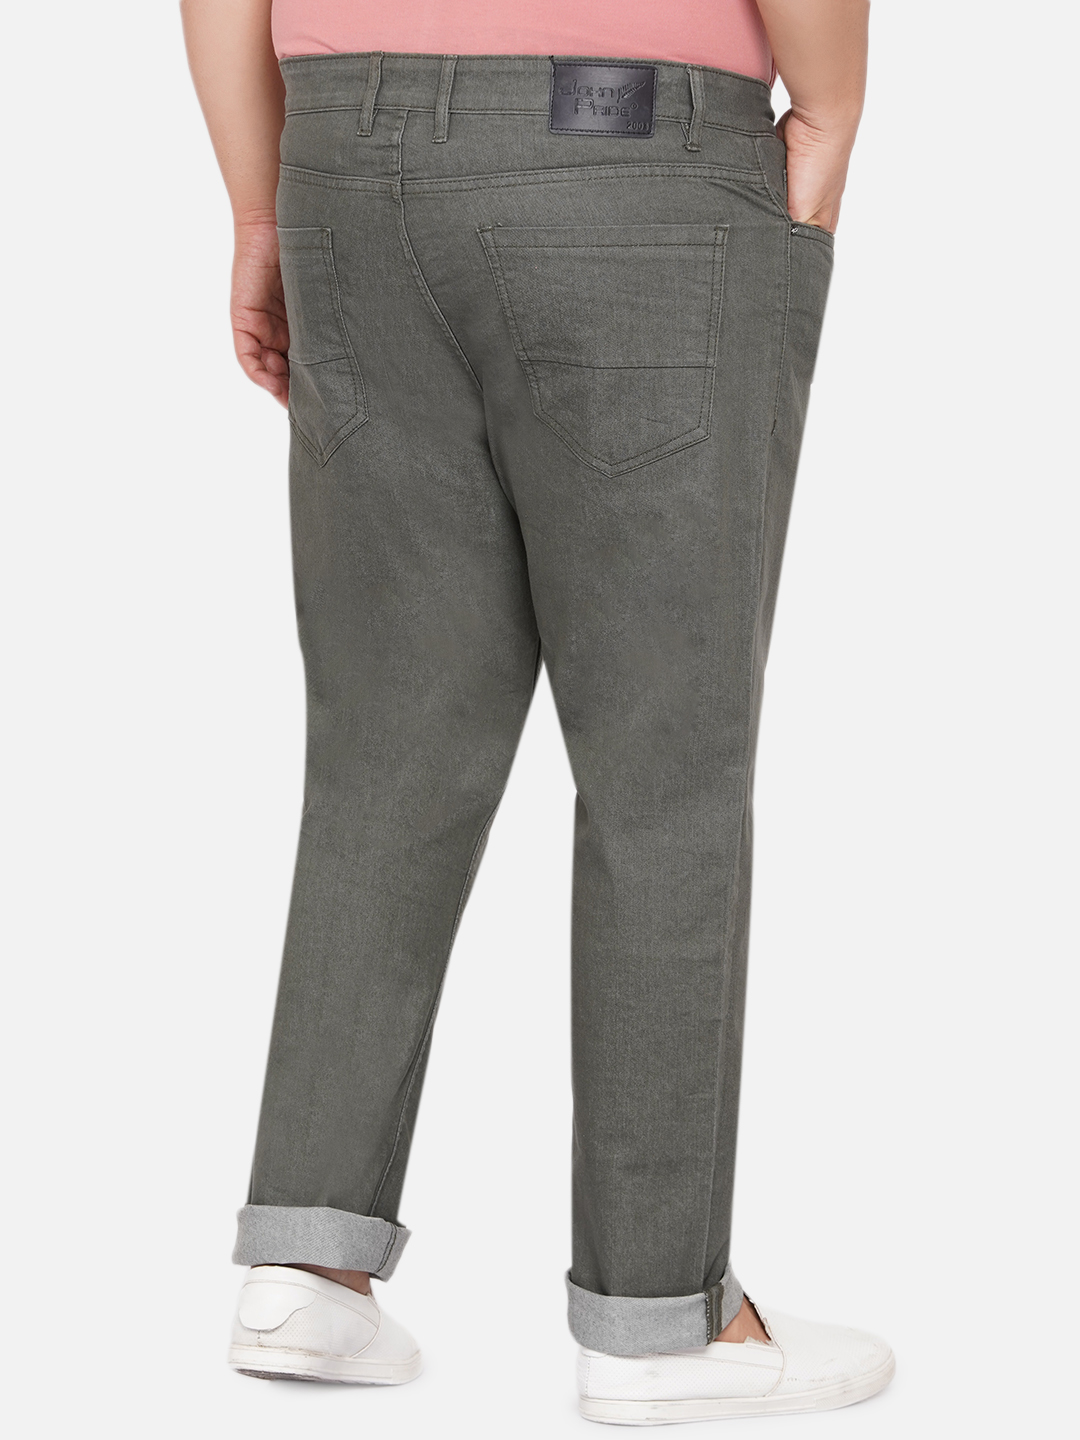 bottomwear/jeans/JPJ12060A/jpj12060a-5.jpg